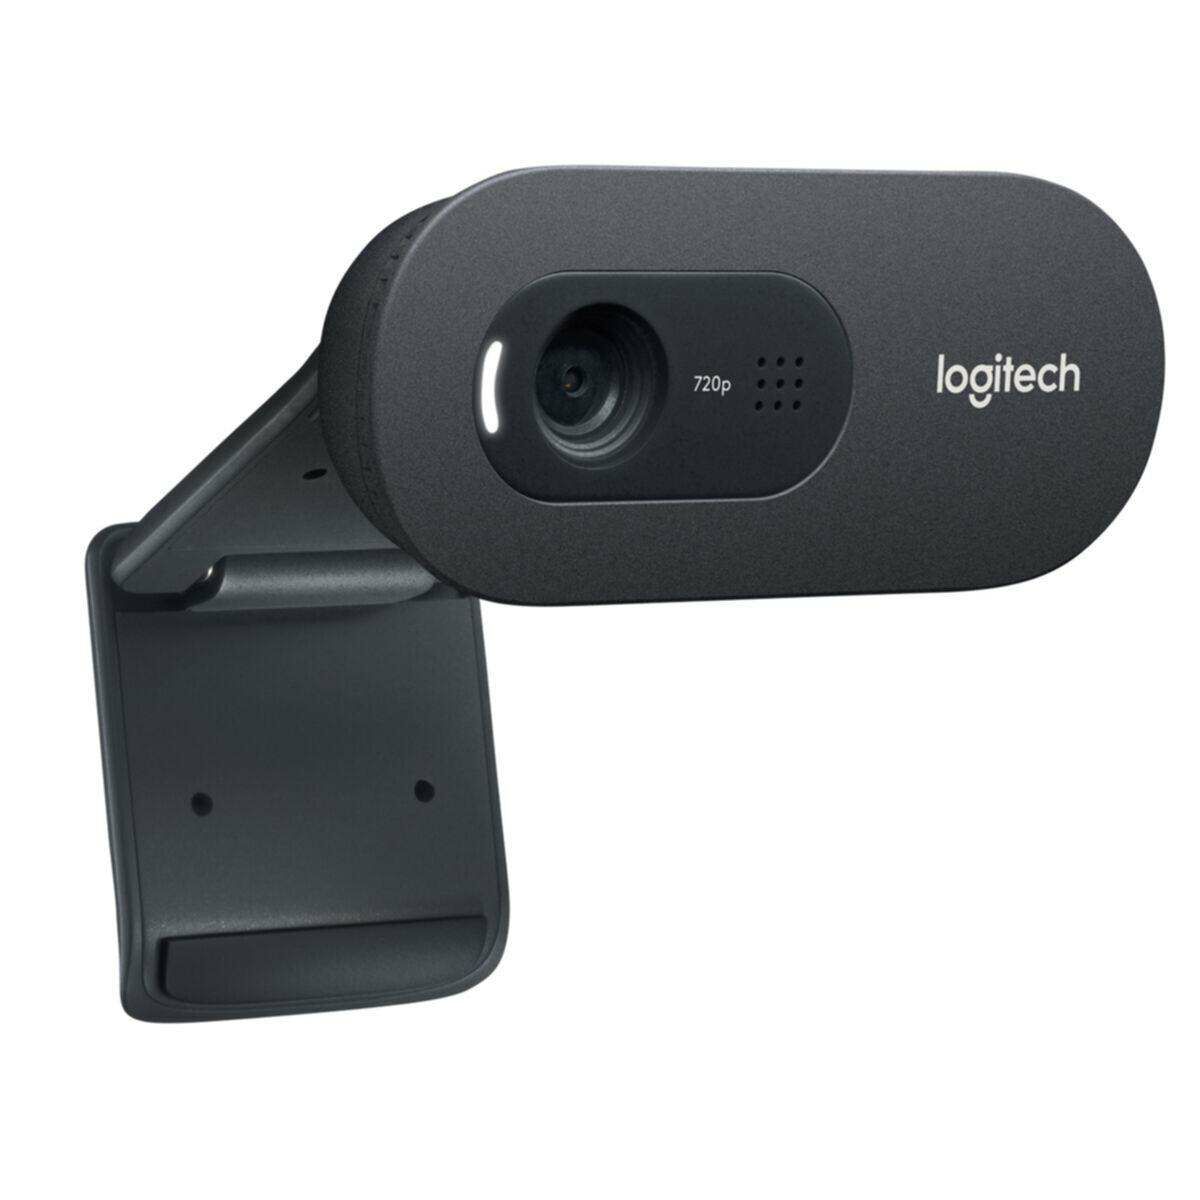 Kép 4/6 - Logitech webkamera C270 720p HD fekete EU (960-001063)